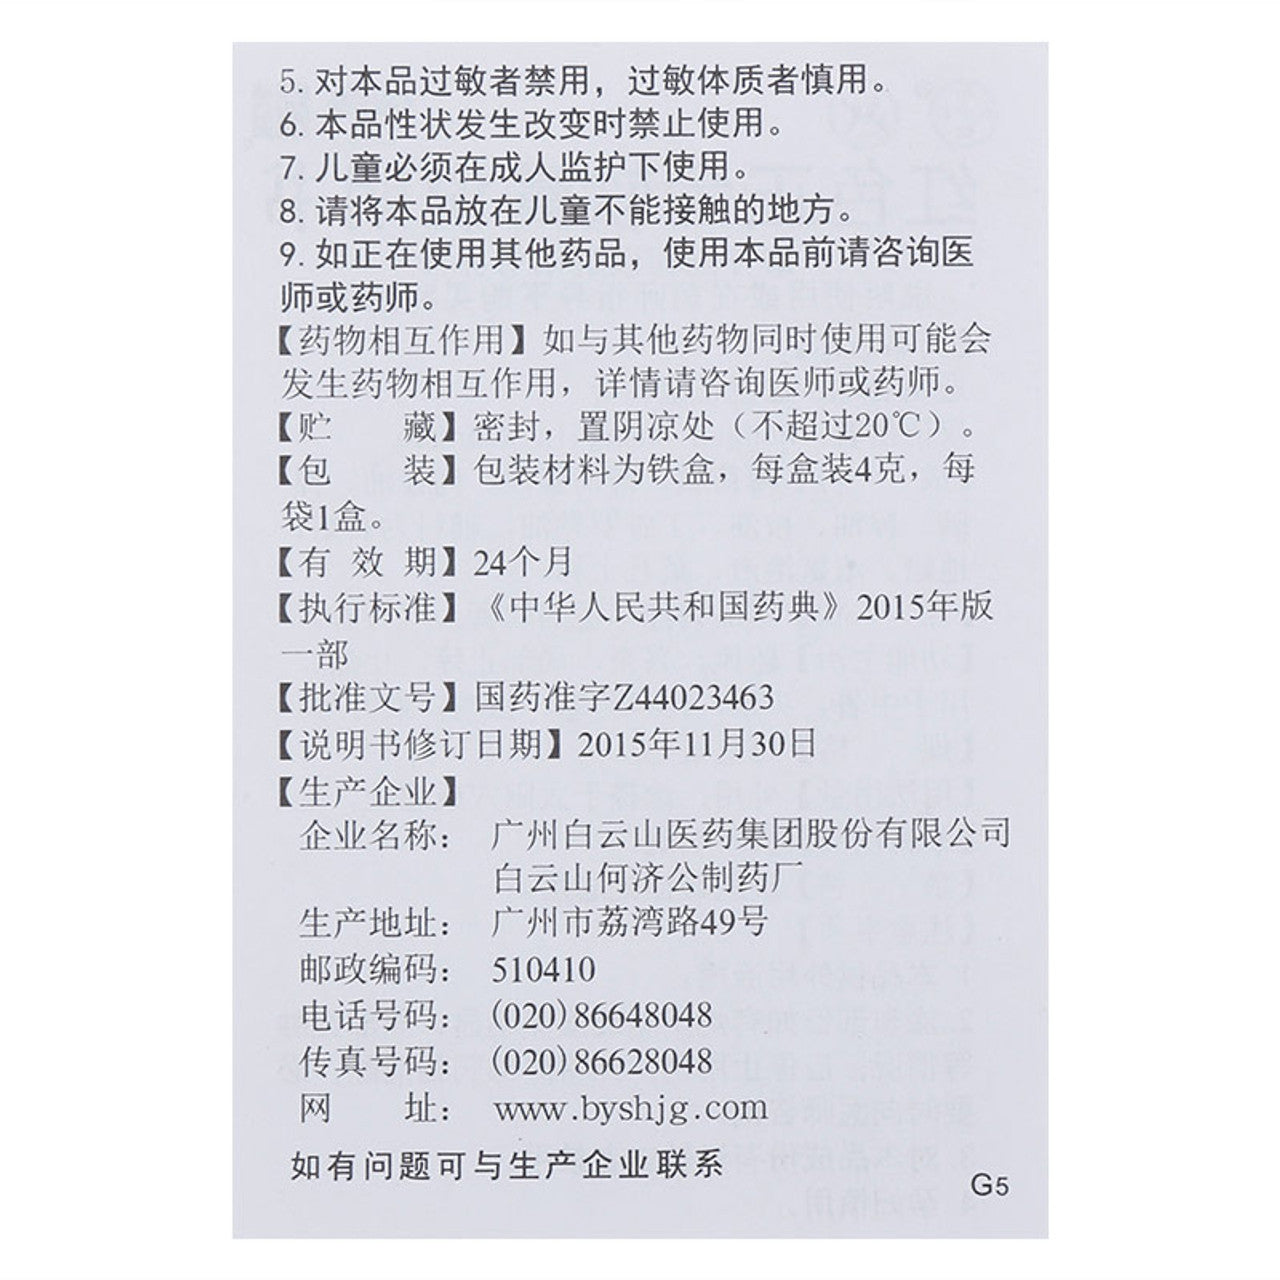 (4g*5 boxes/lot). Hongse Zhengjin Ruangao or Hongse Zhengjin Ointment for Mosquito Bites Ointment. Hong Se Zheng Jin Ruan Gao